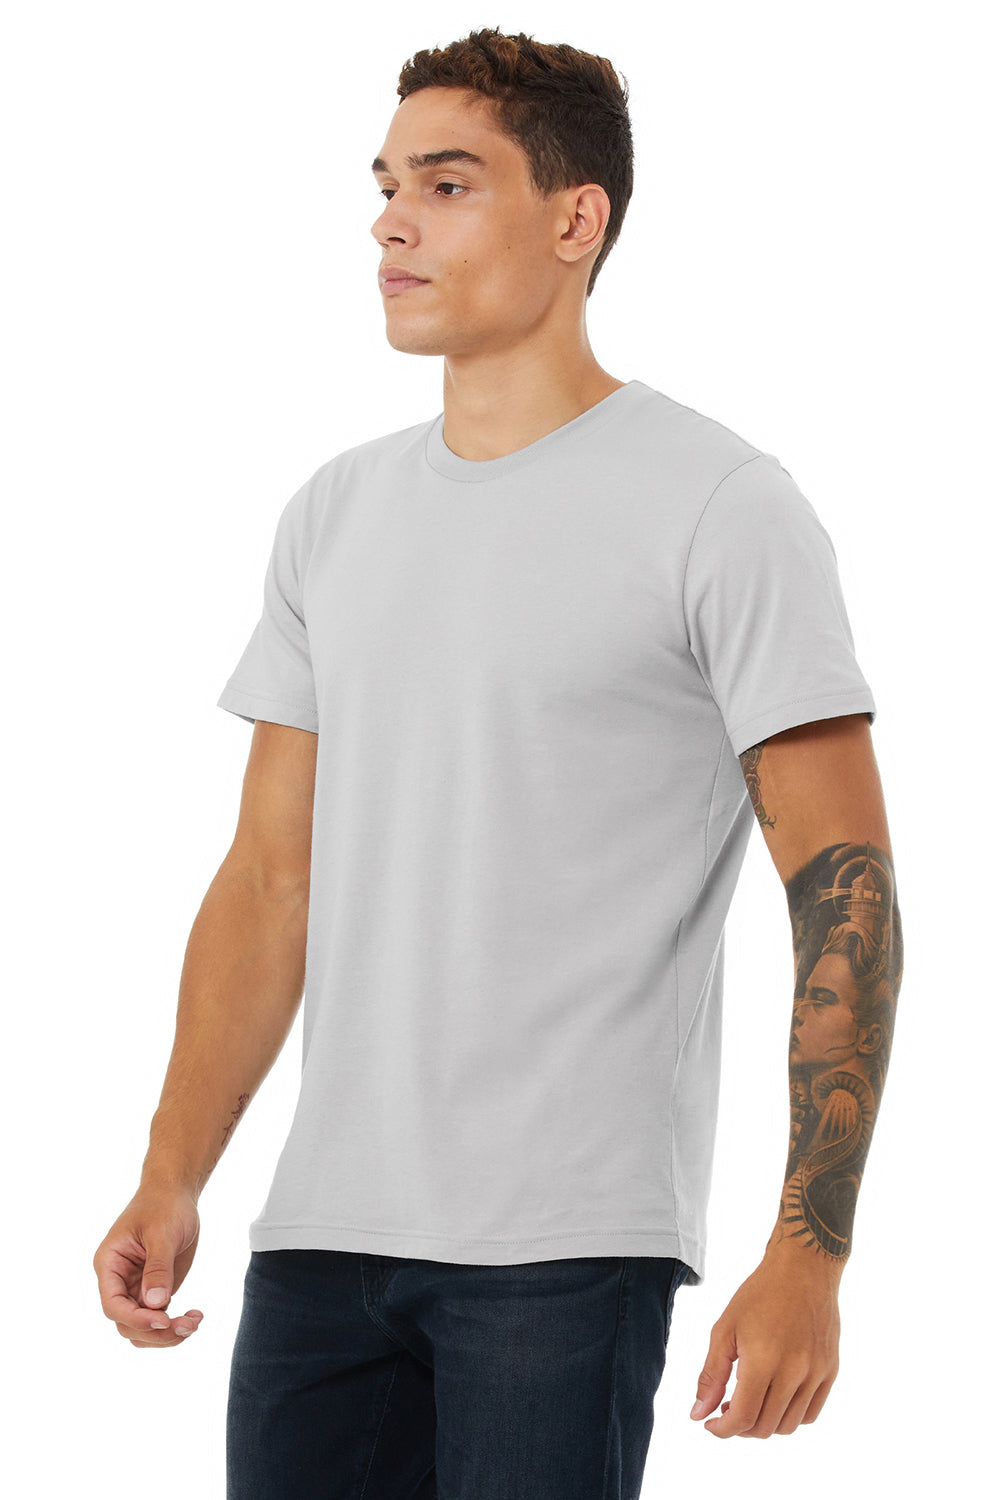 Bella + Canvas BC3001/3001C Mens Jersey Short Sleeve Crewneck T-Shirt Solid Athletic Grey Model 3Q